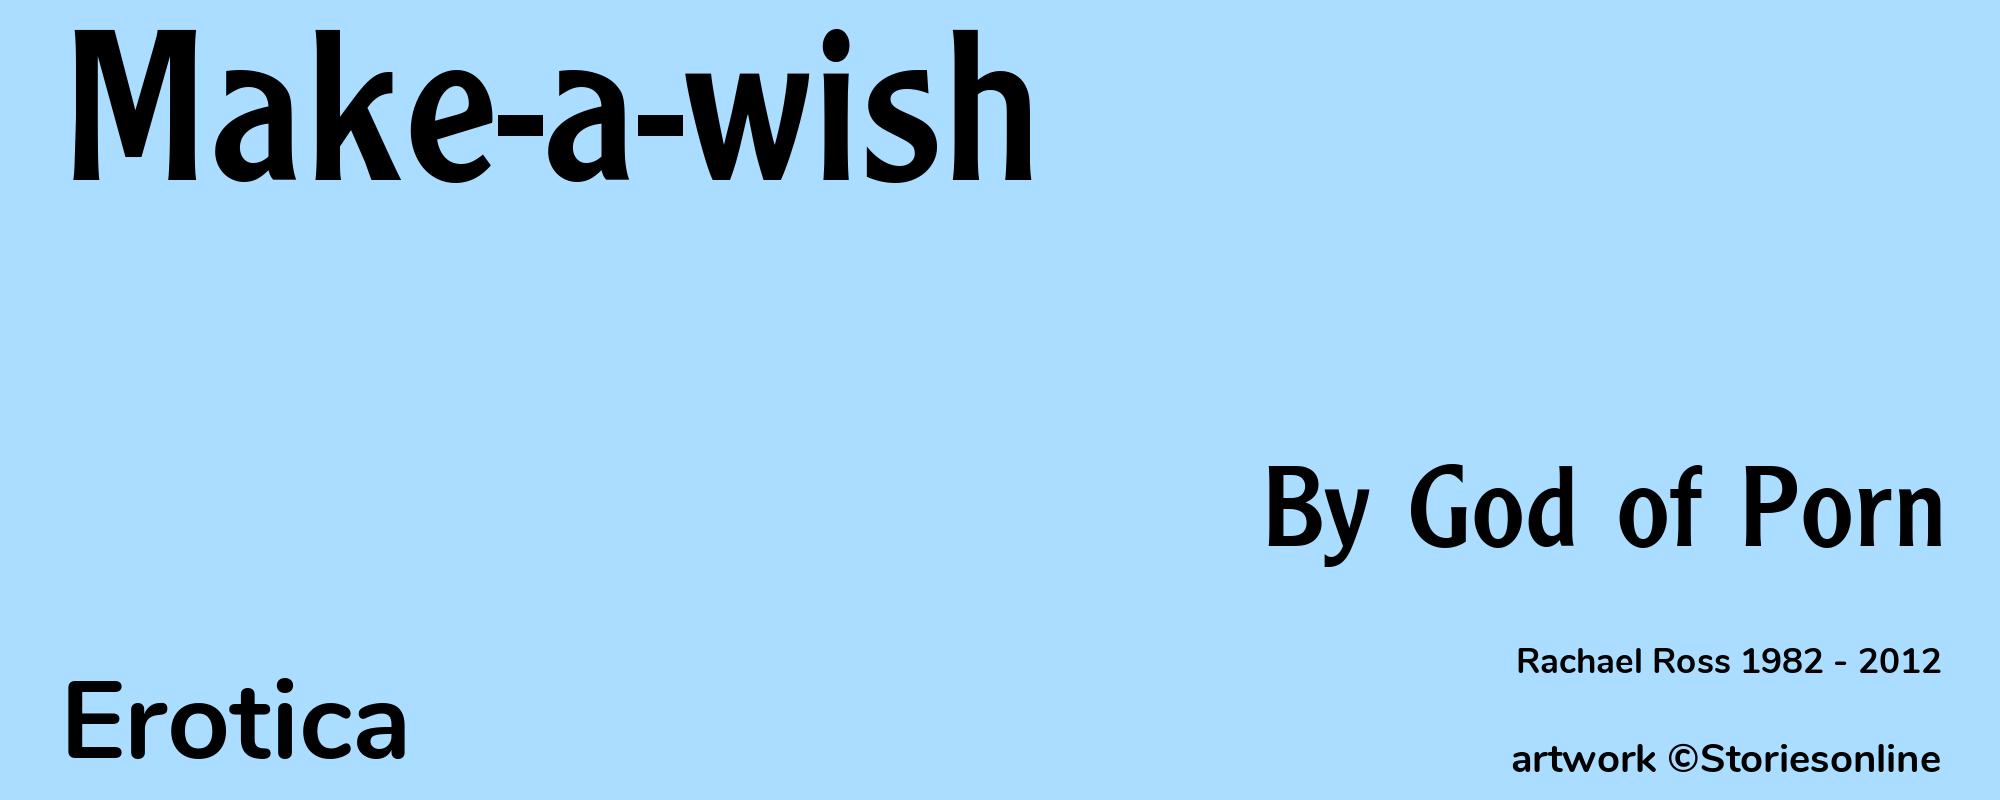 Make-a-wish - Cover